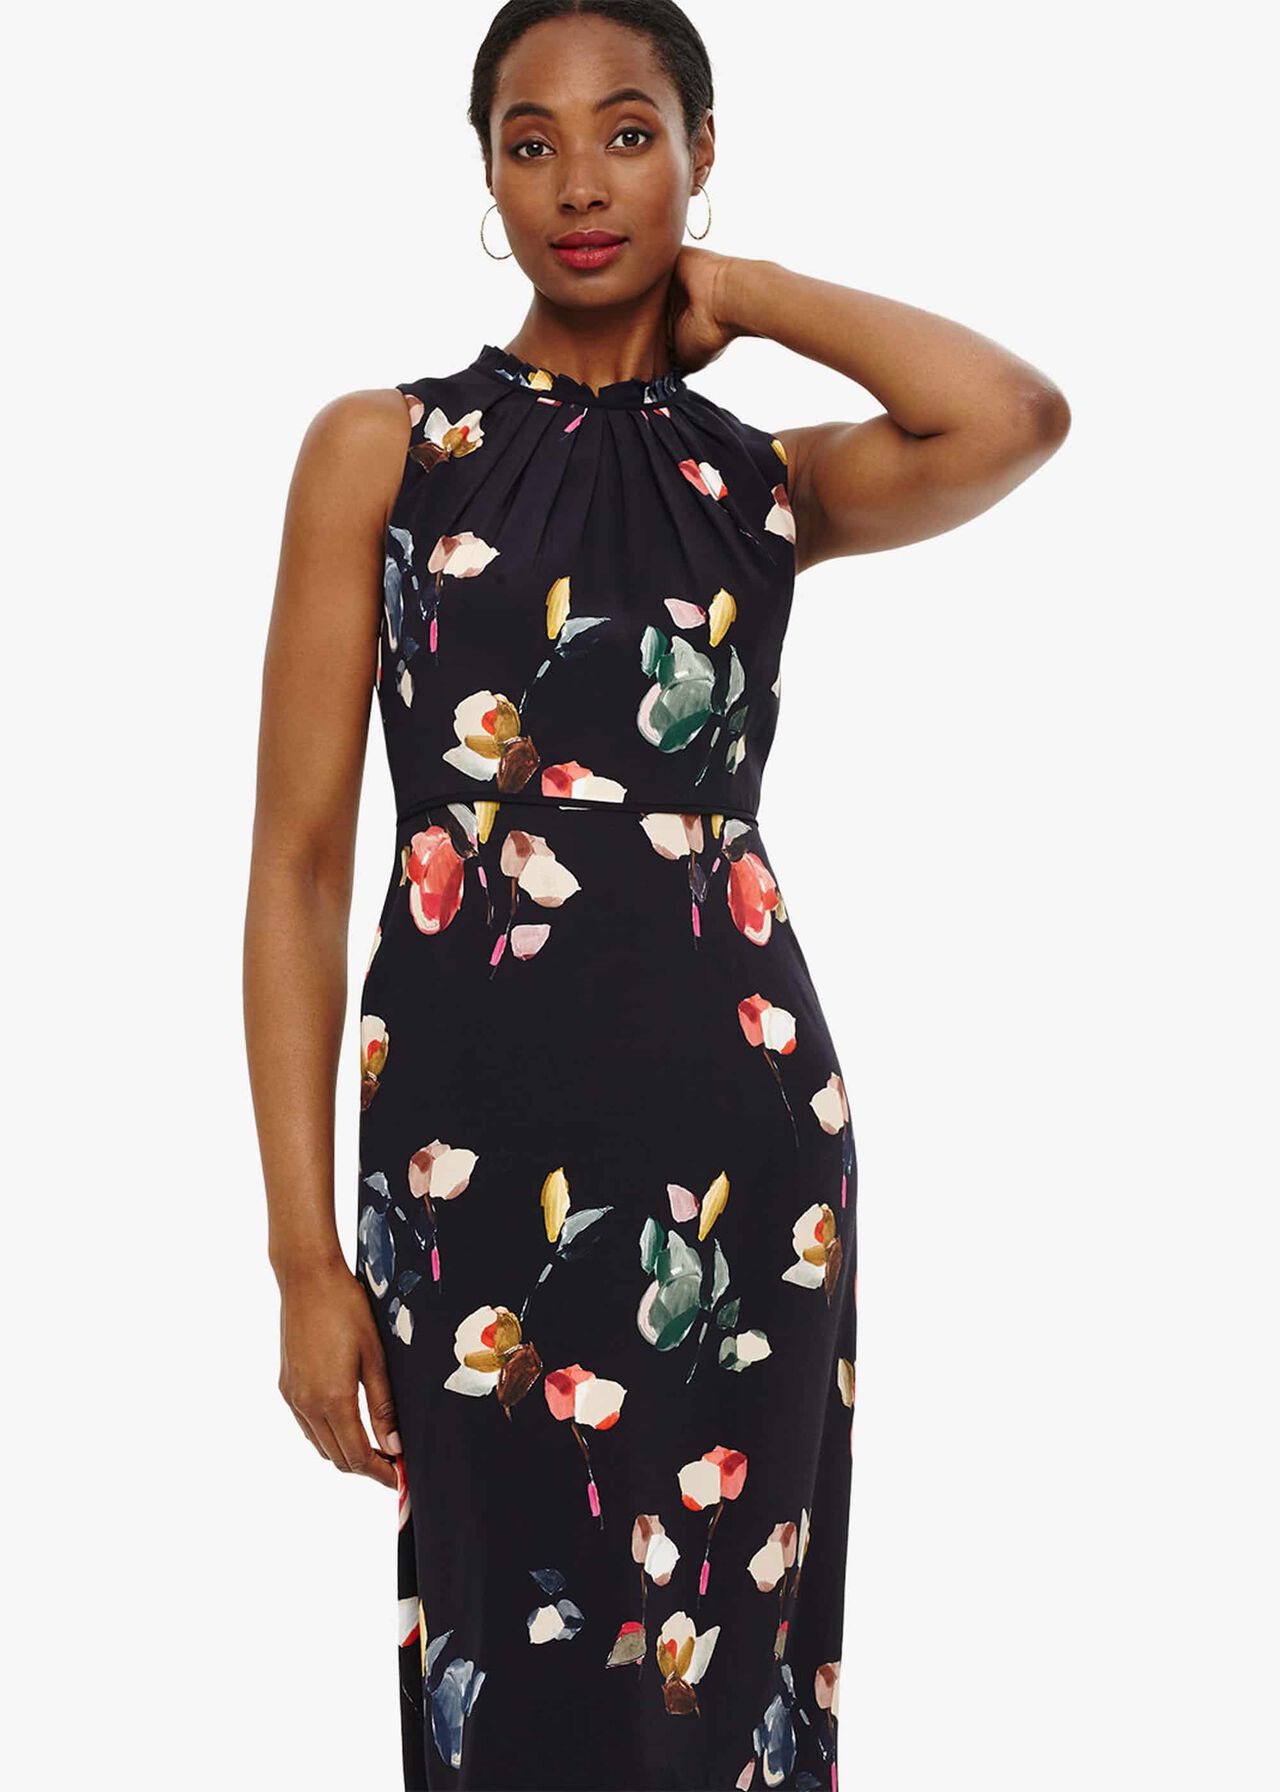 Berdina Floral Maxi Dress